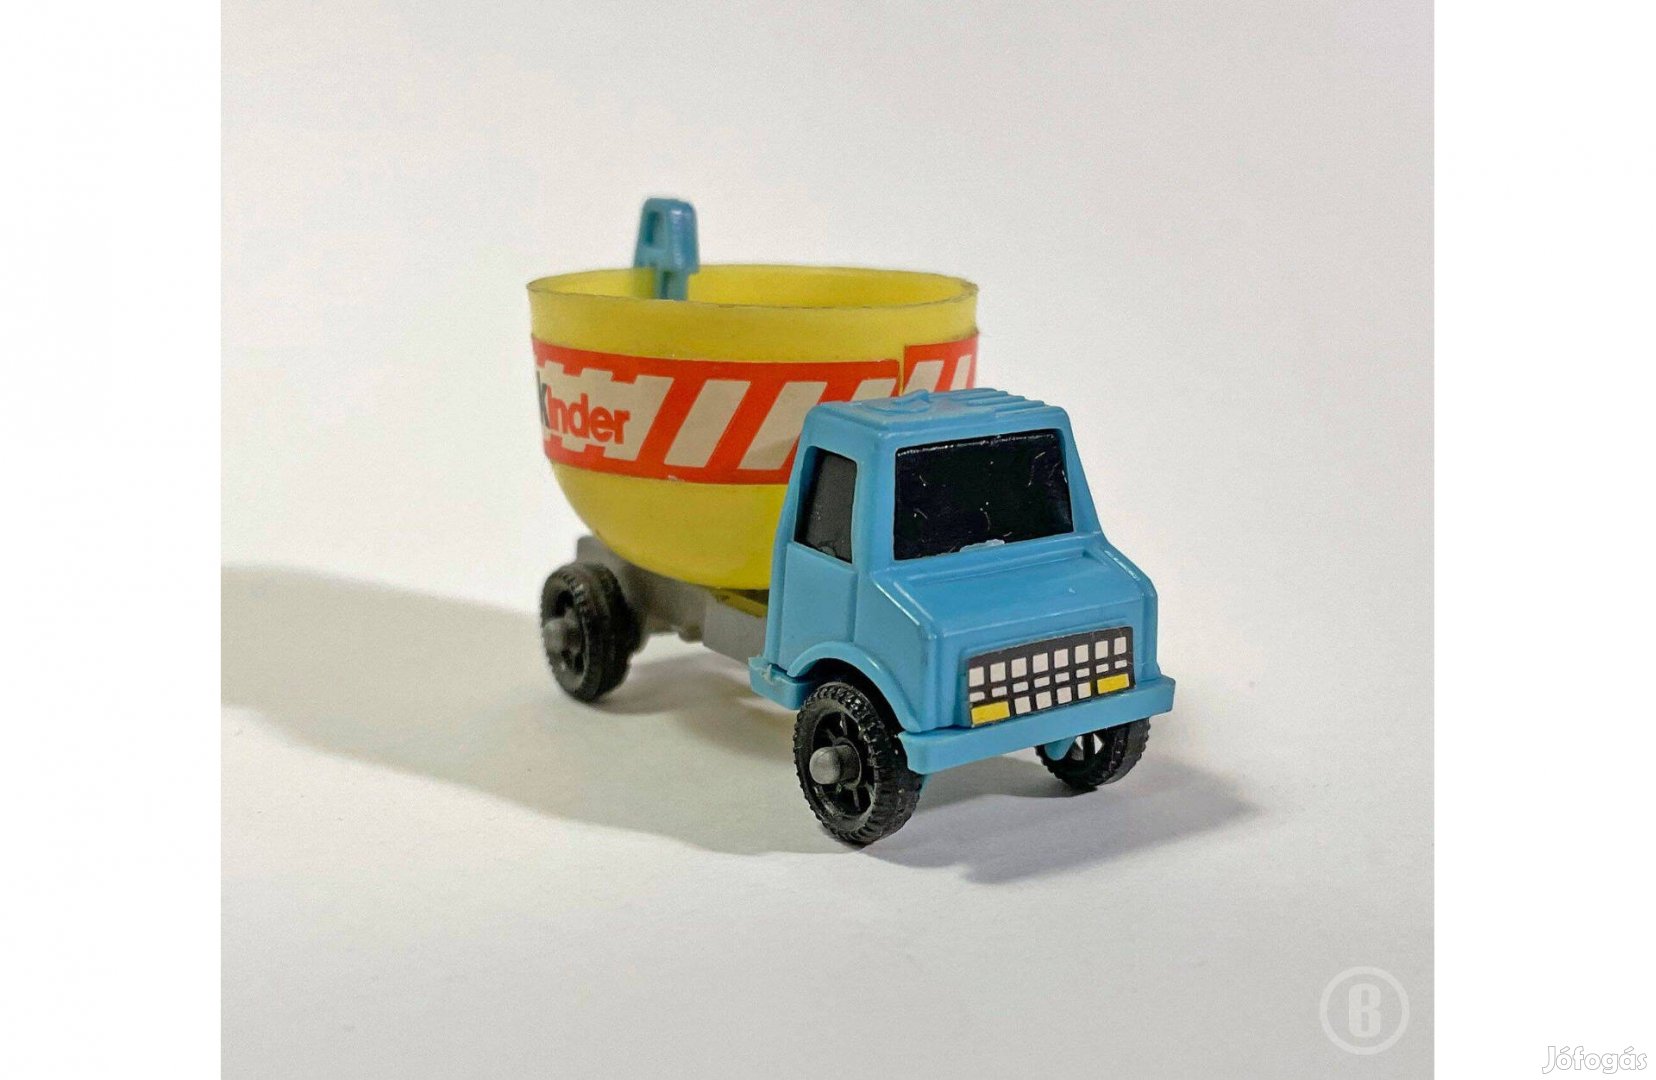 Kinder teherautó - különleges szállítmány